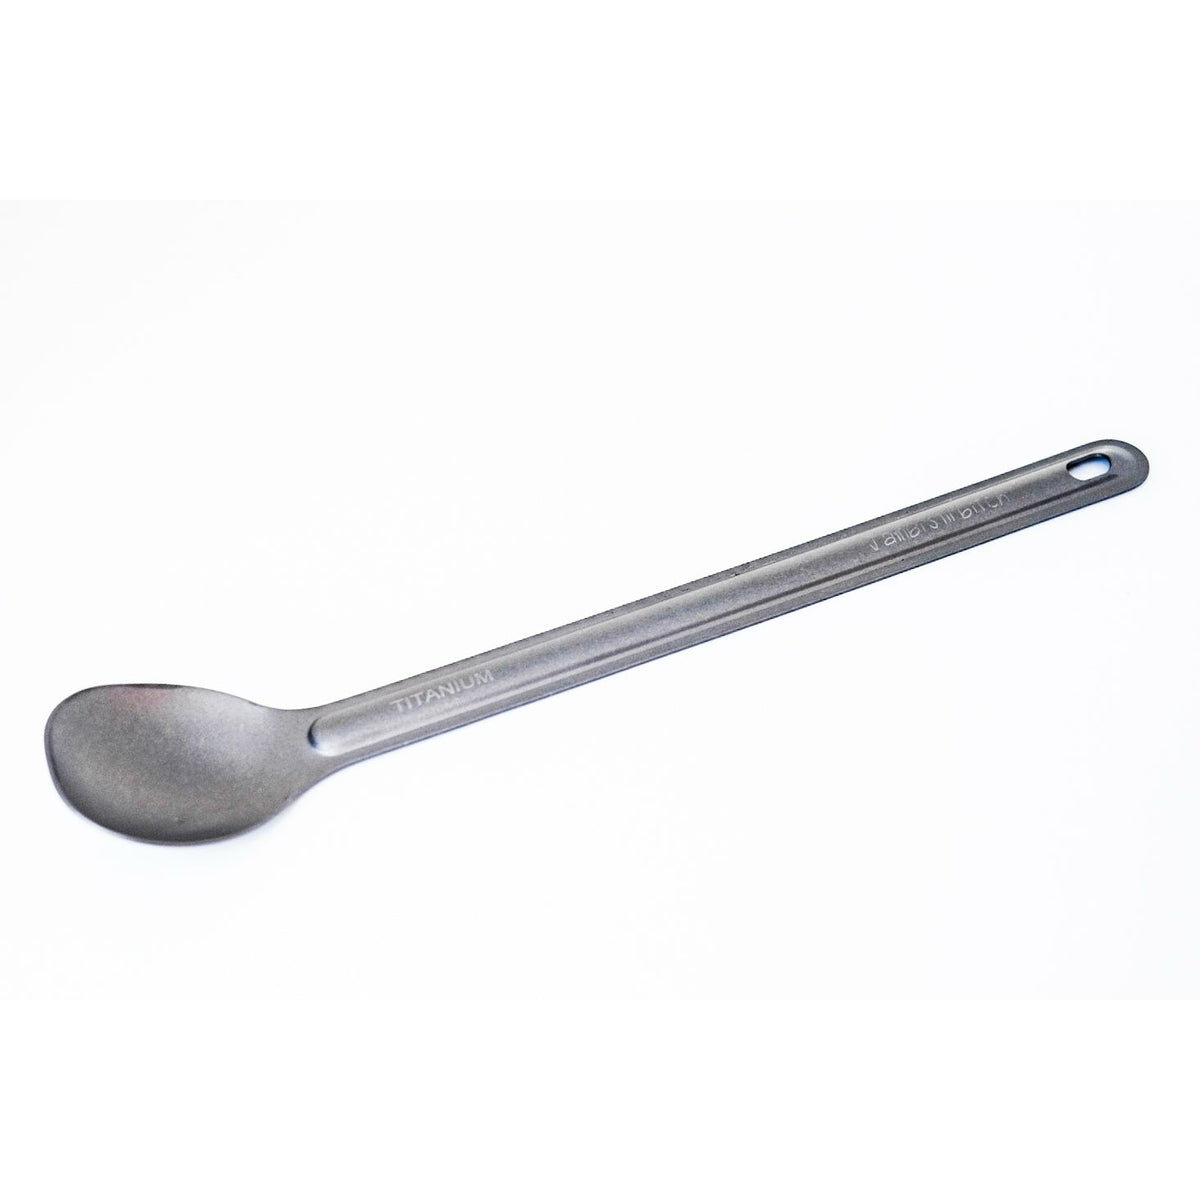 Jambz-lil-Bitch Spoon